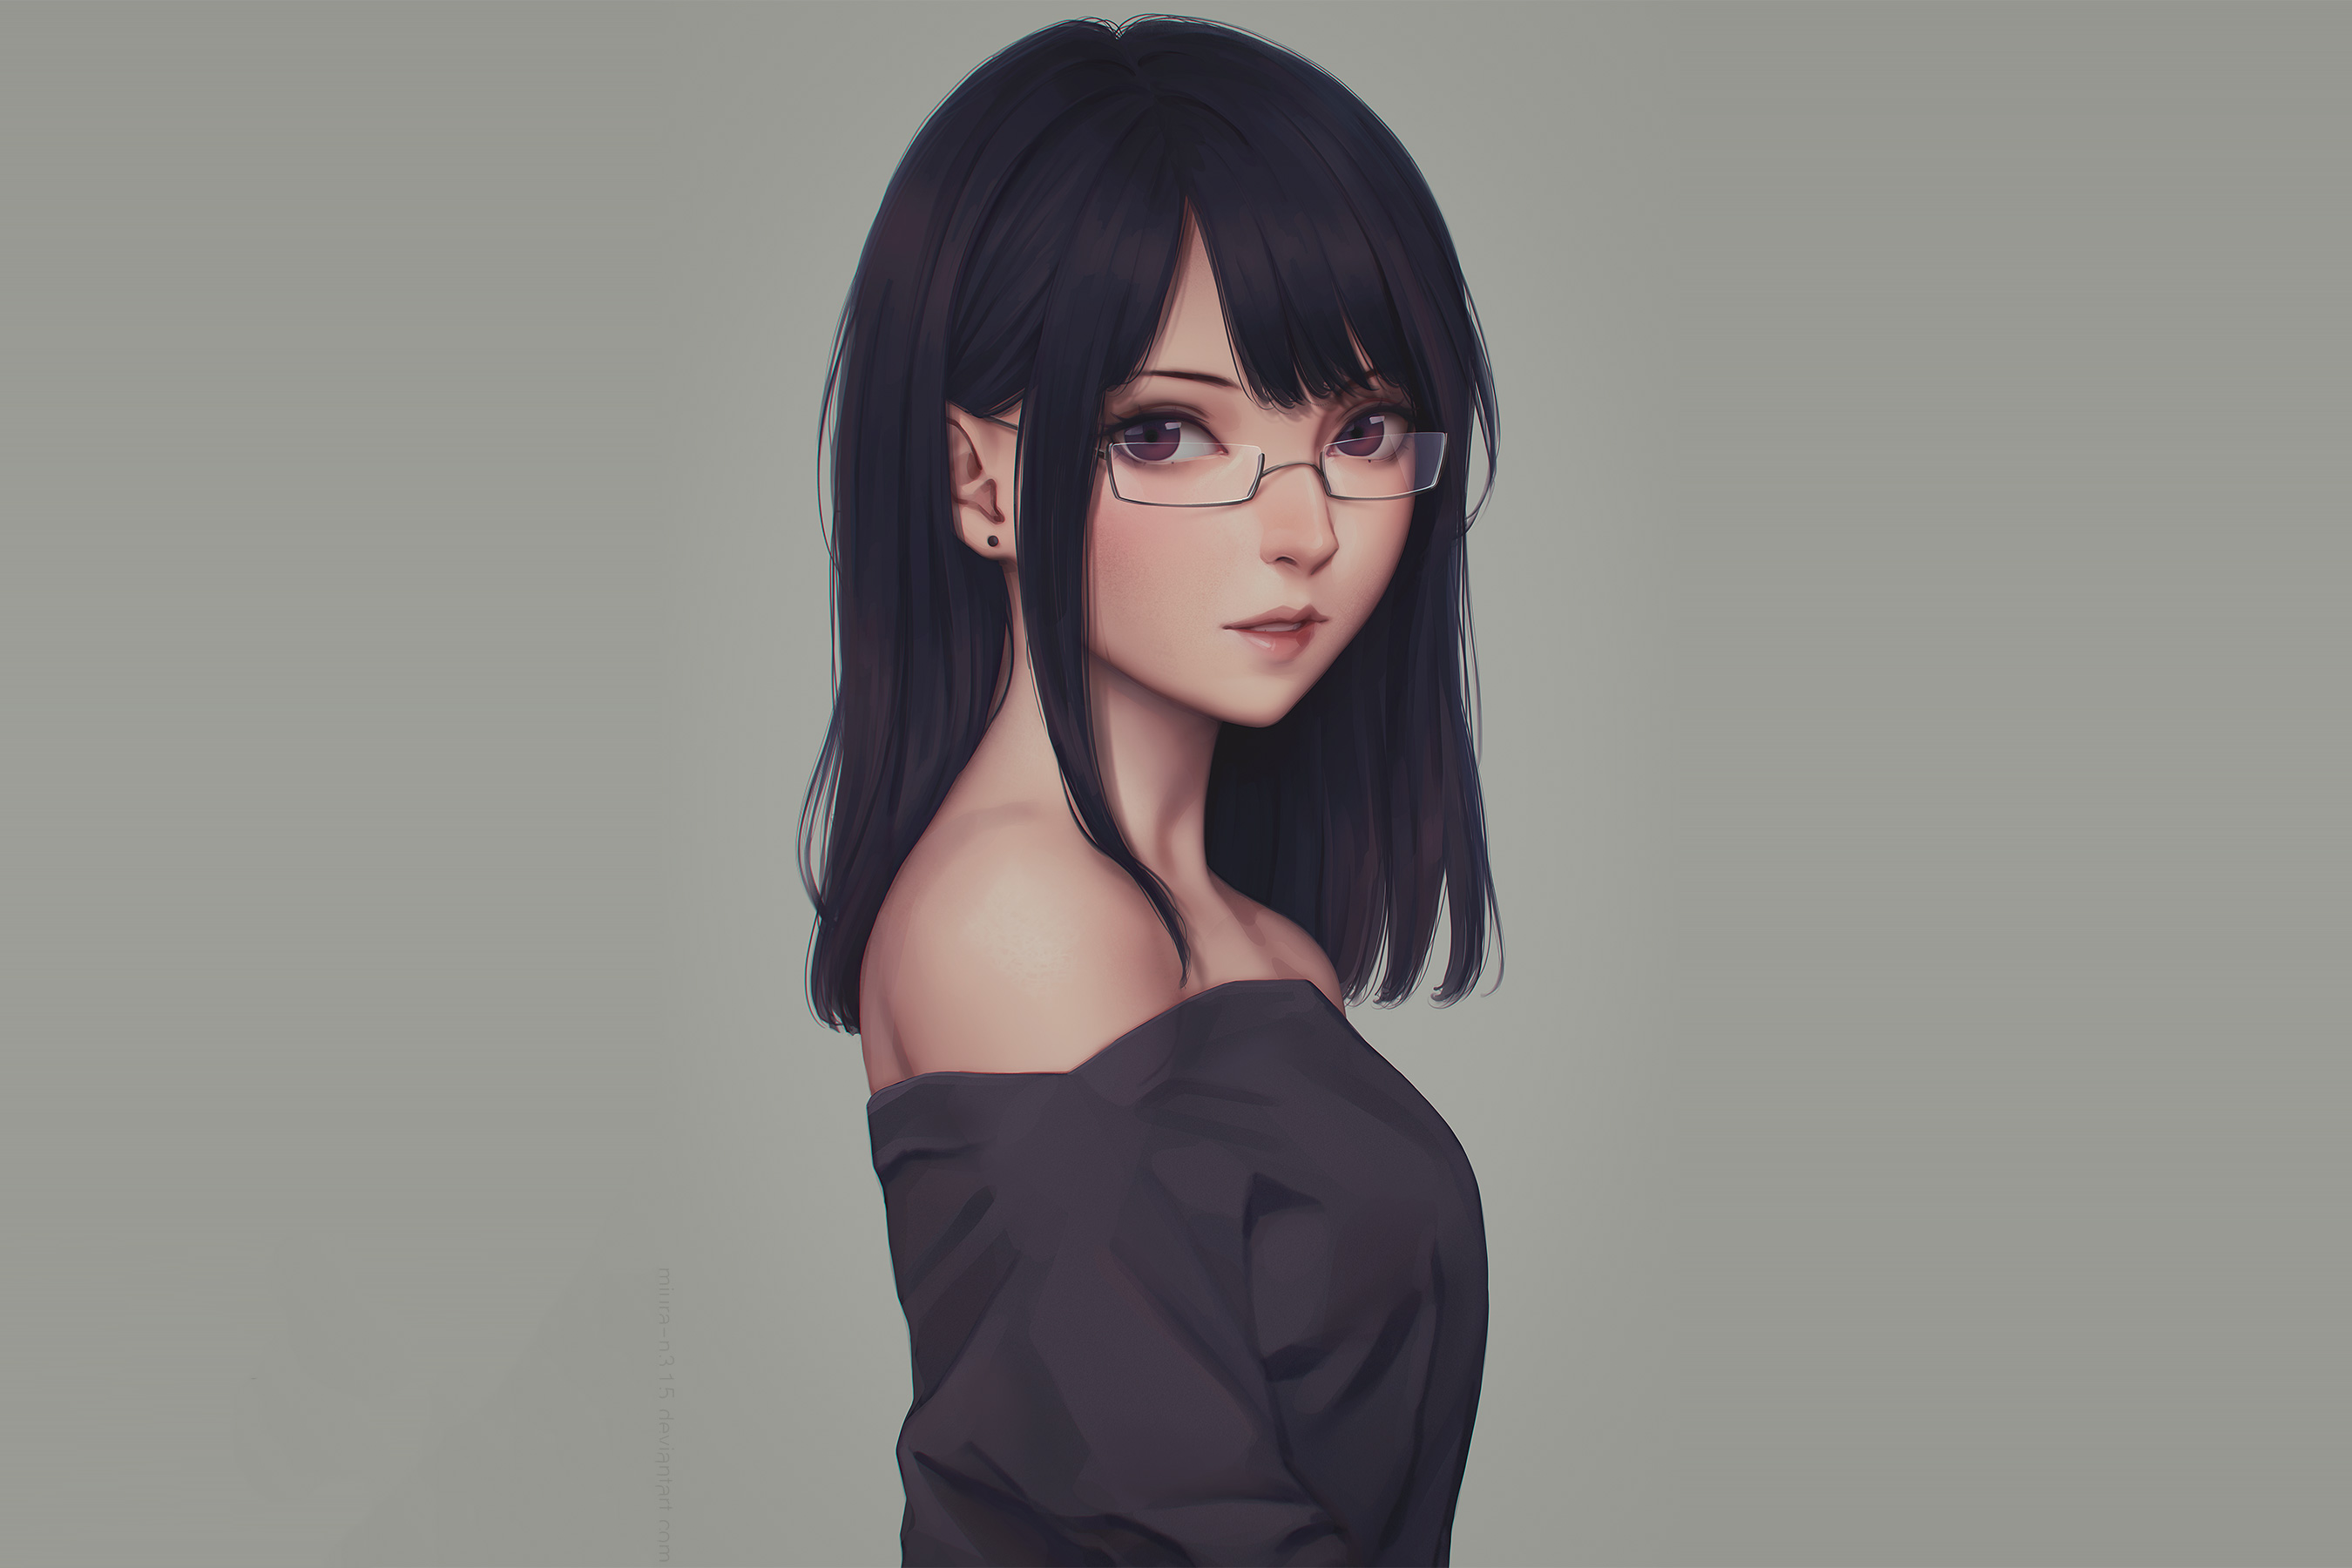 Gratis 300 Gratis Wallpaper Anime Girl Glasses Terbaru - Background ID